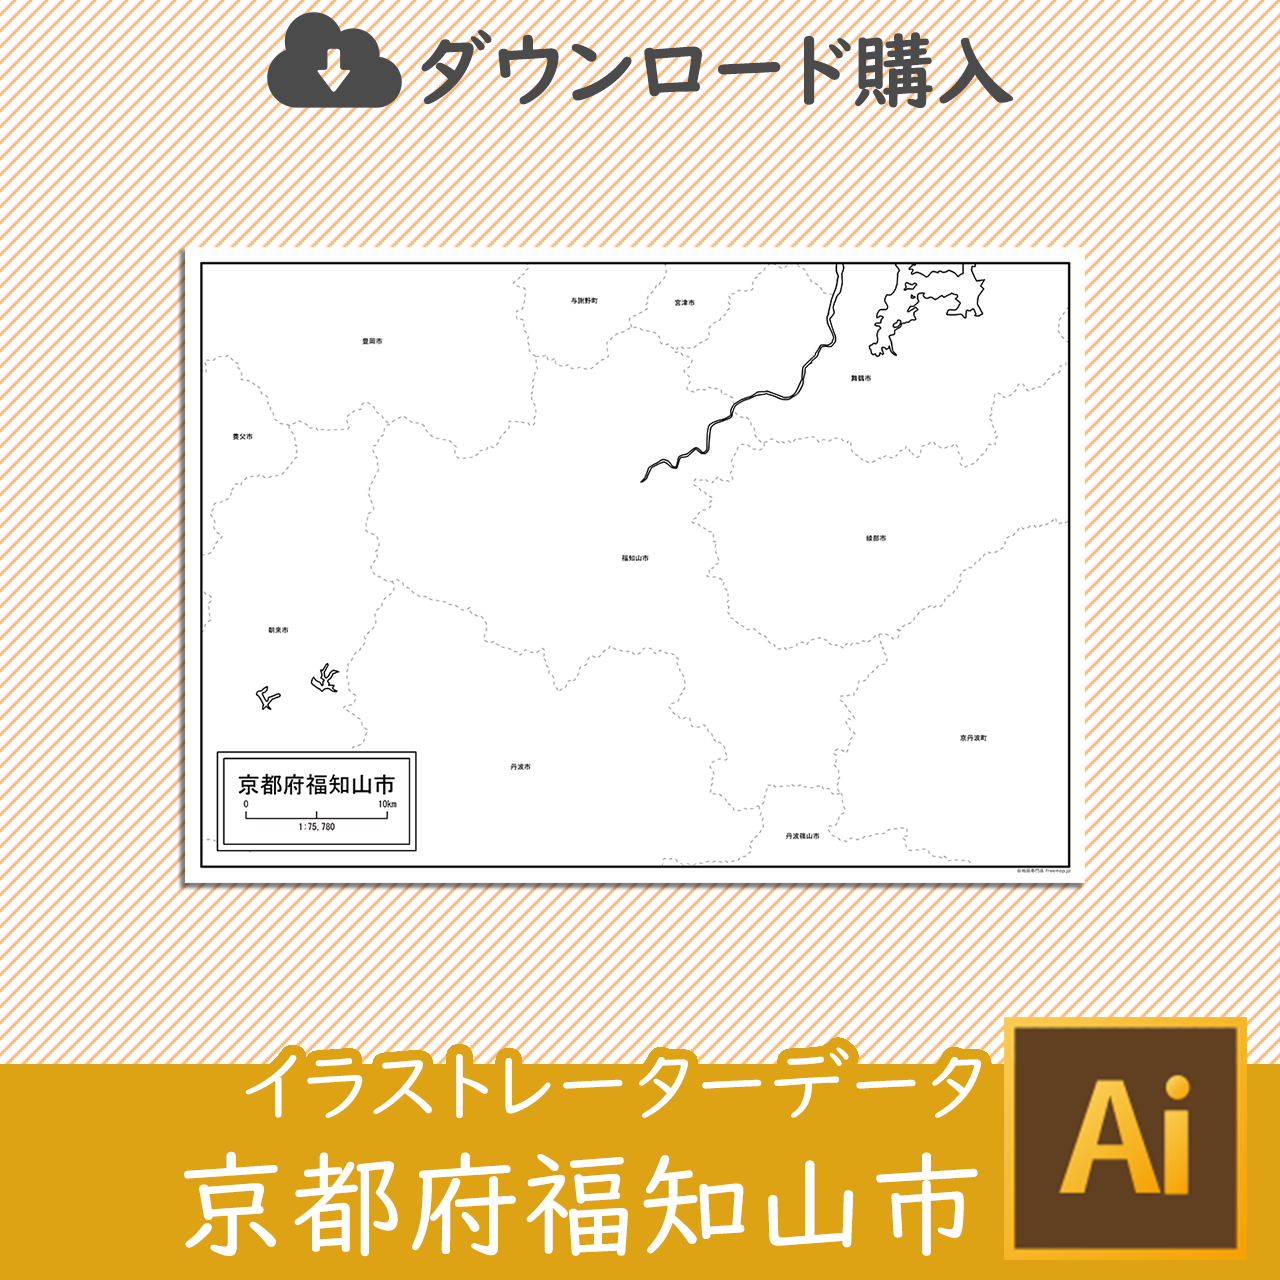 福知山市の白地図のサムネイル